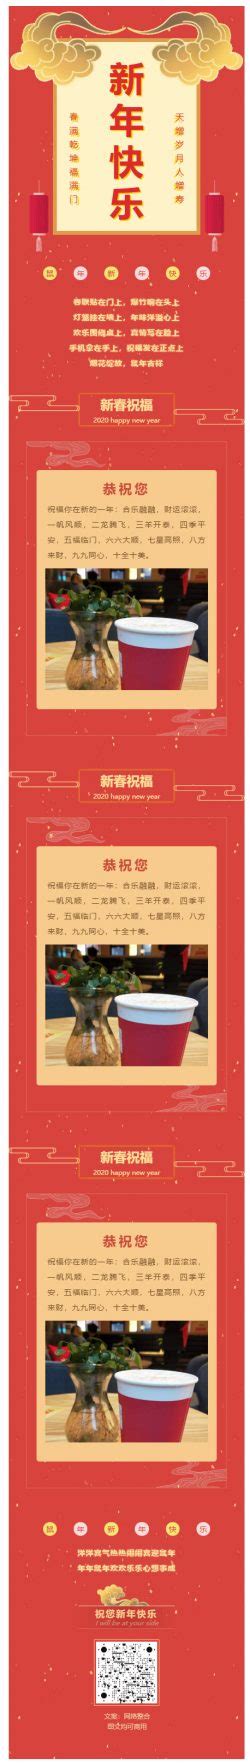 元旦新年快乐微信公众号图文模板推送素材中国风优秀推文模板 | 微信公众号文章模板大全